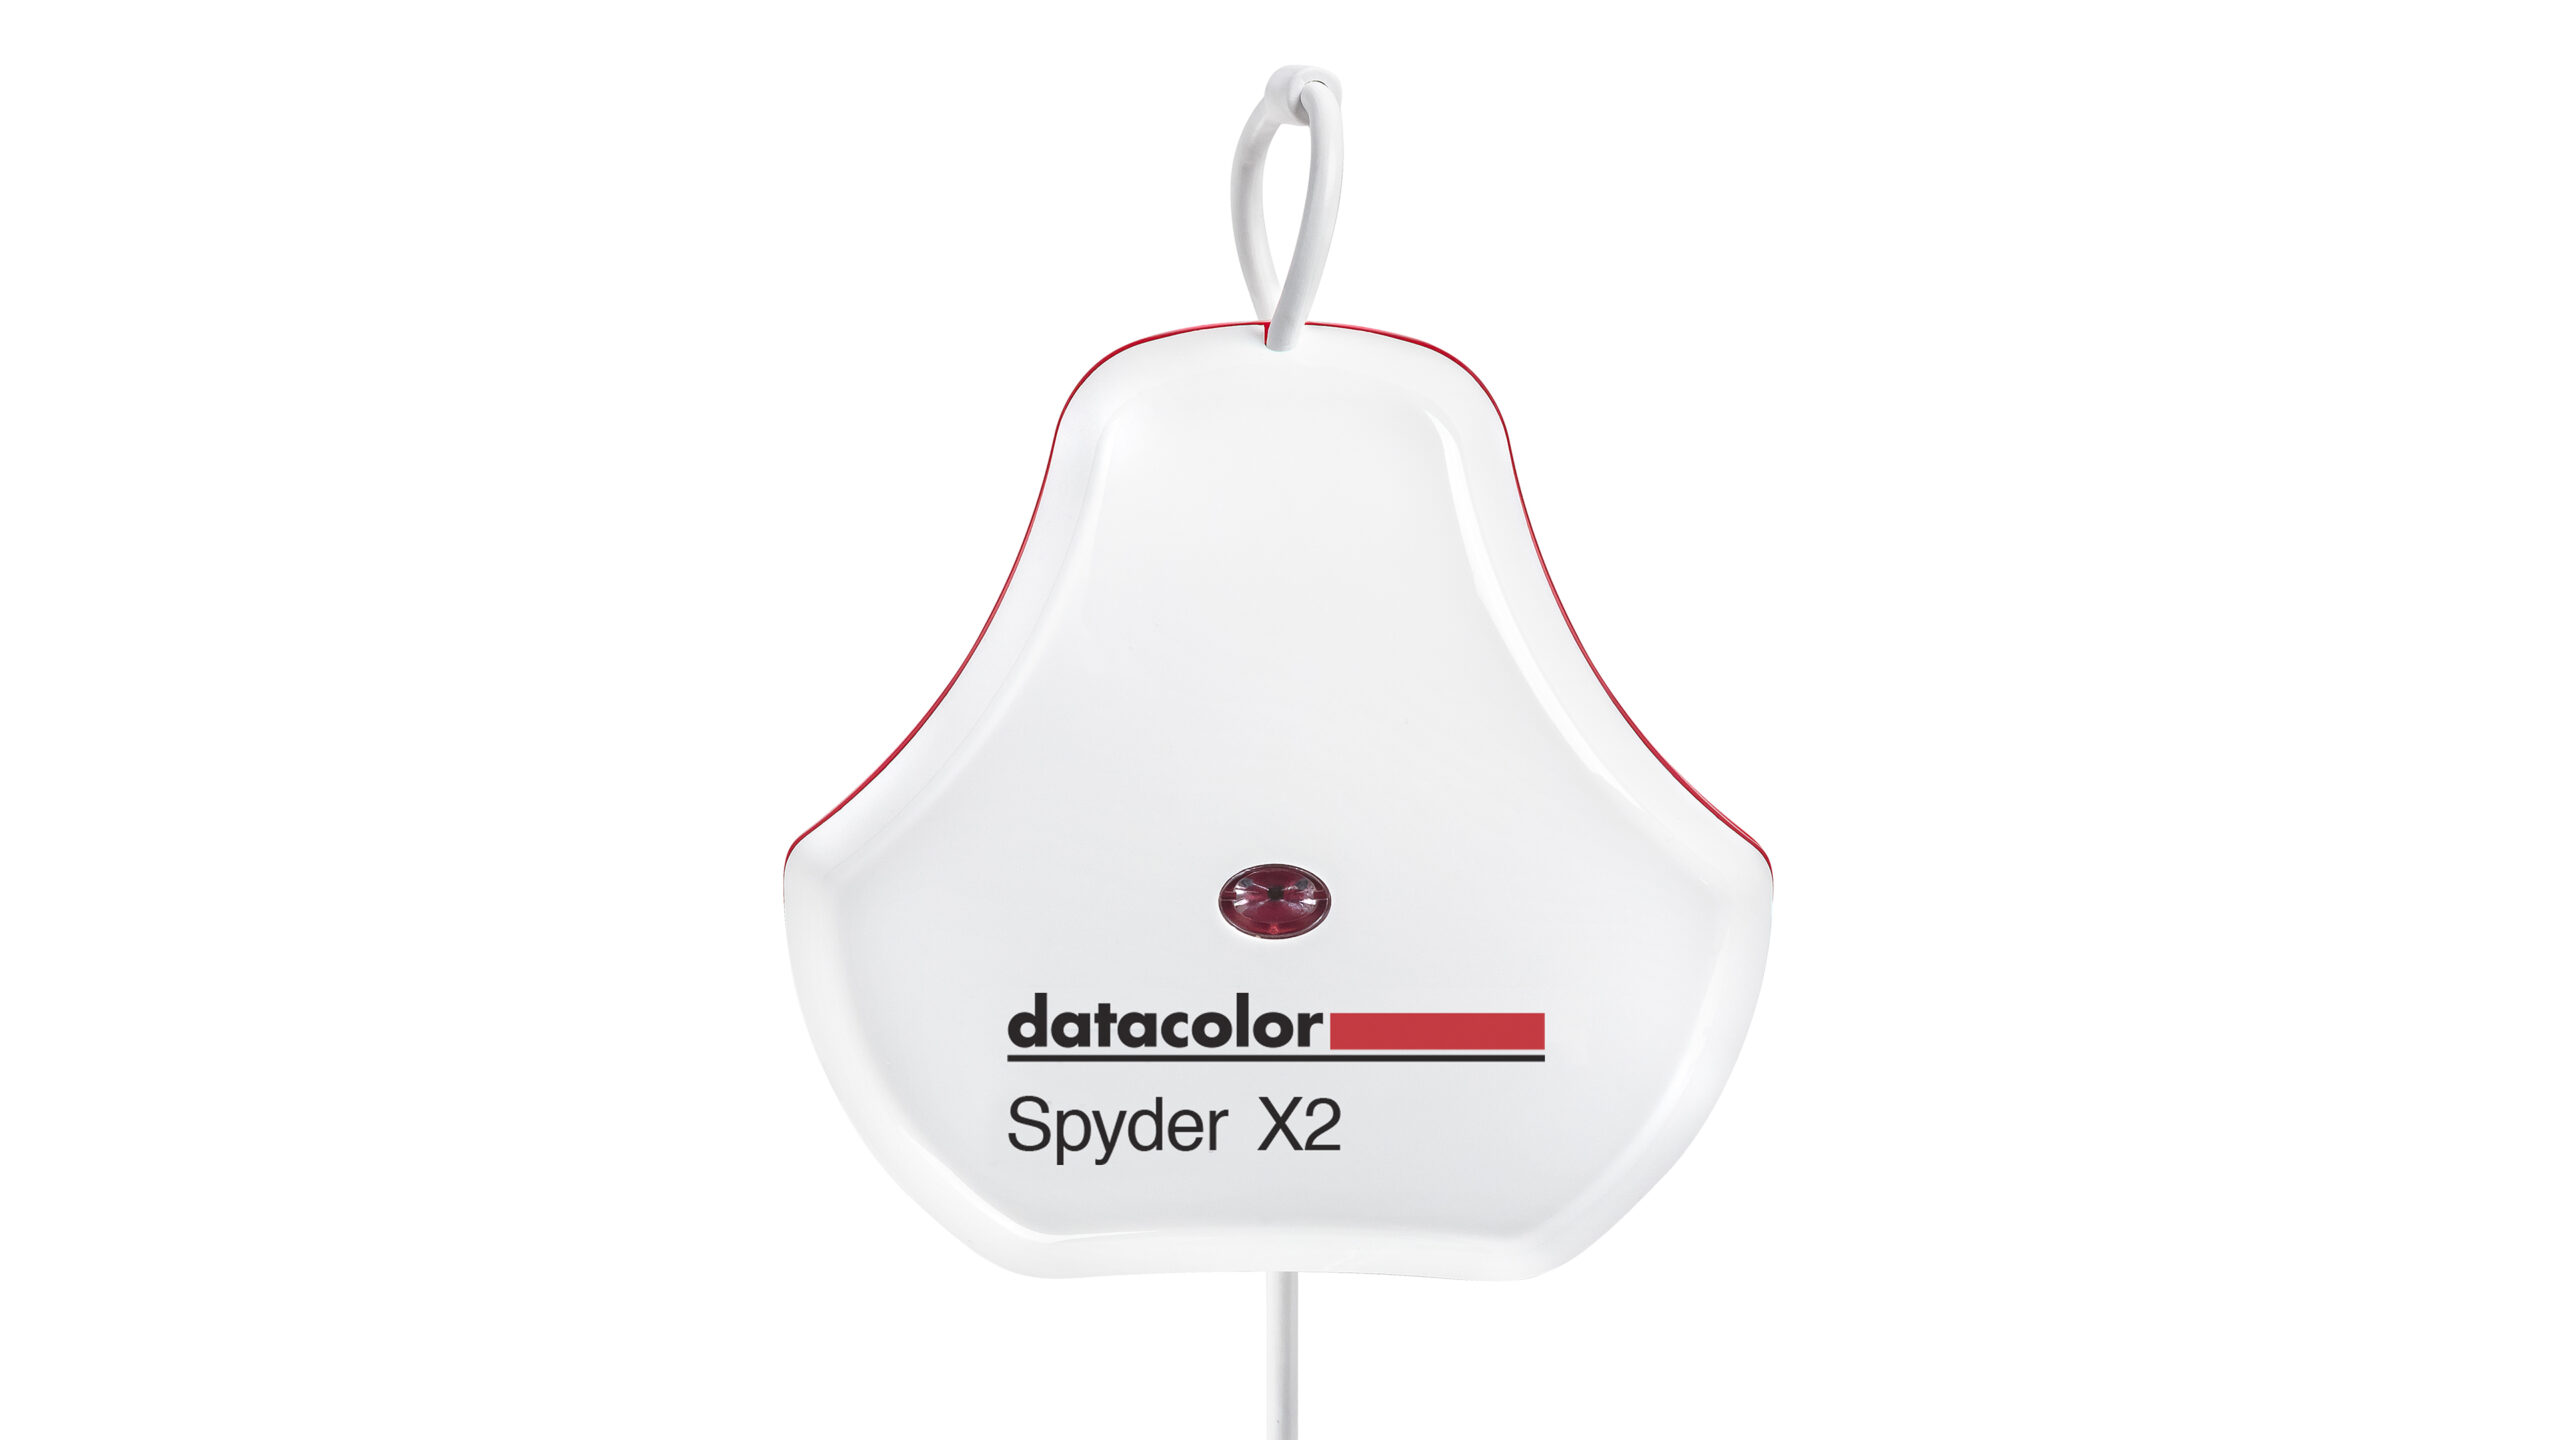 Datacolor Spyder X2 above